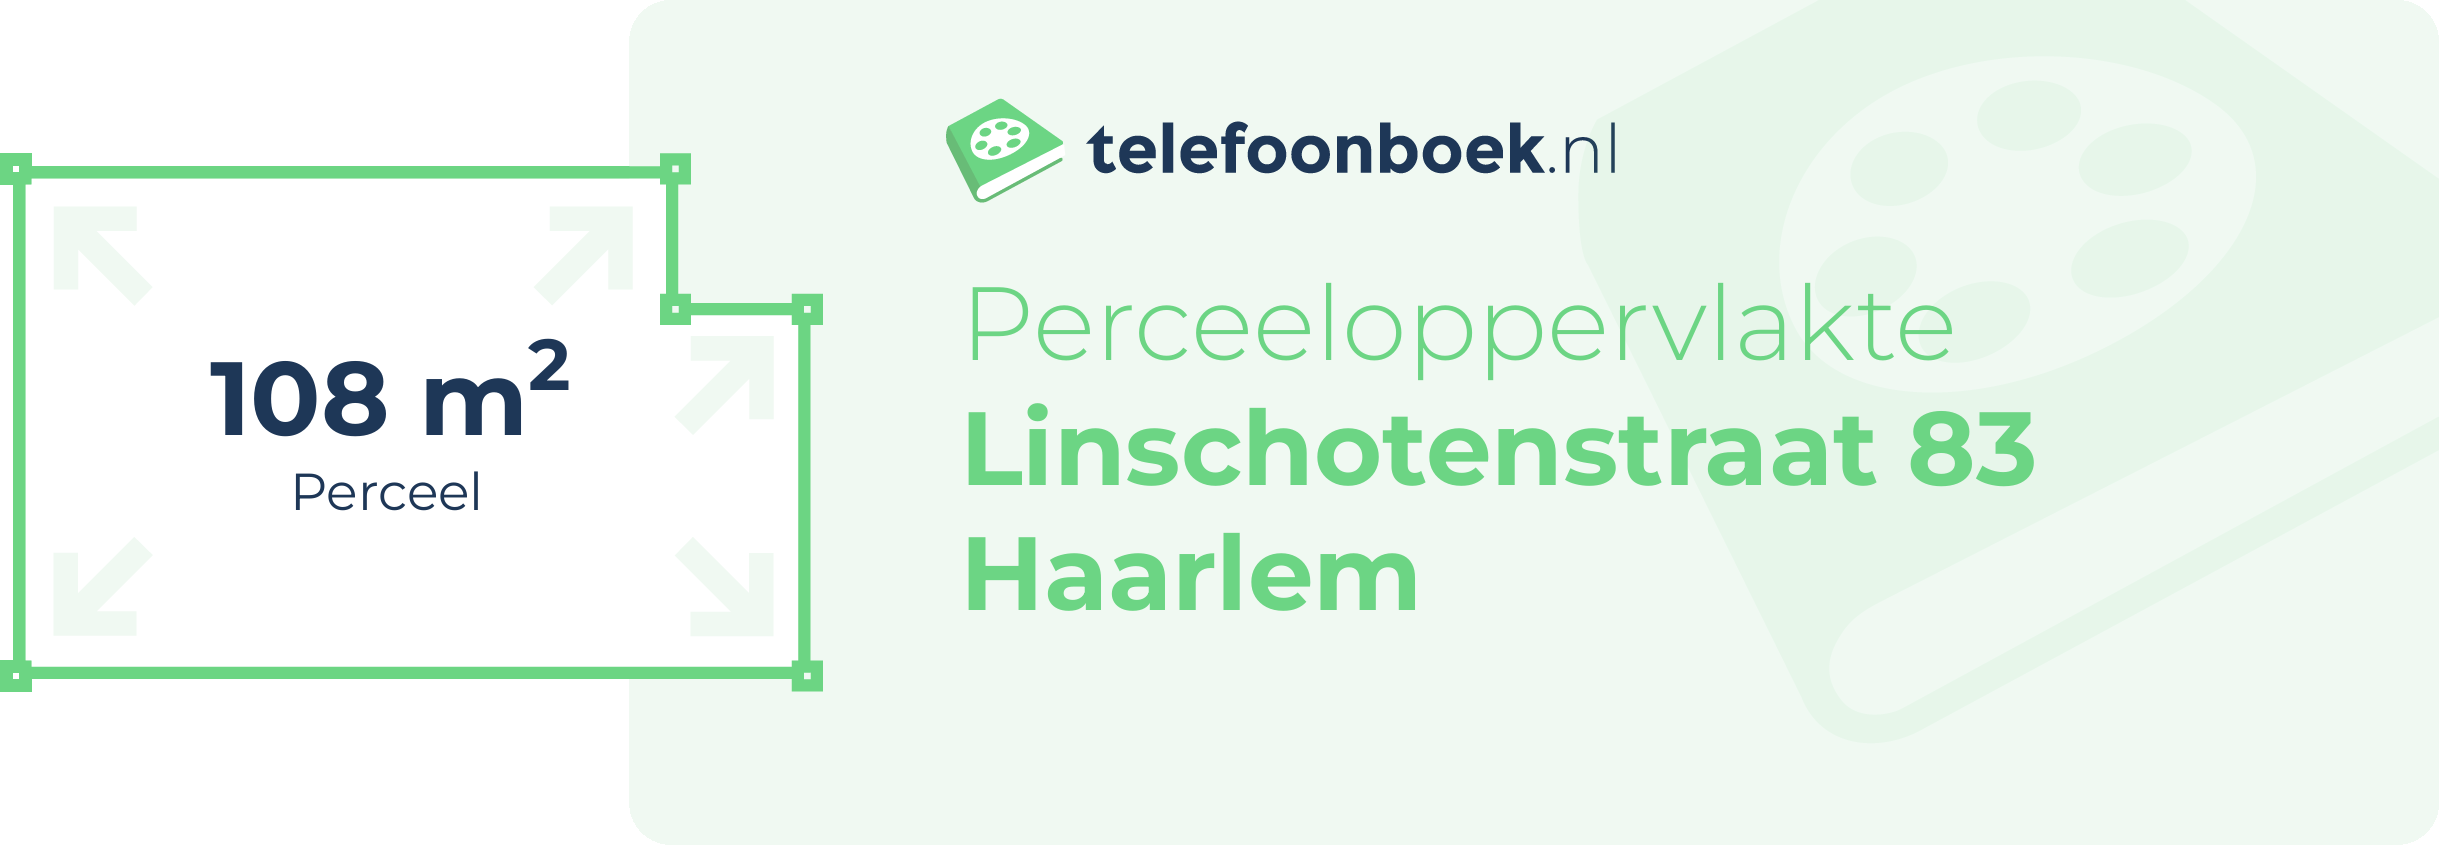 Perceeloppervlakte Linschotenstraat 83 Haarlem